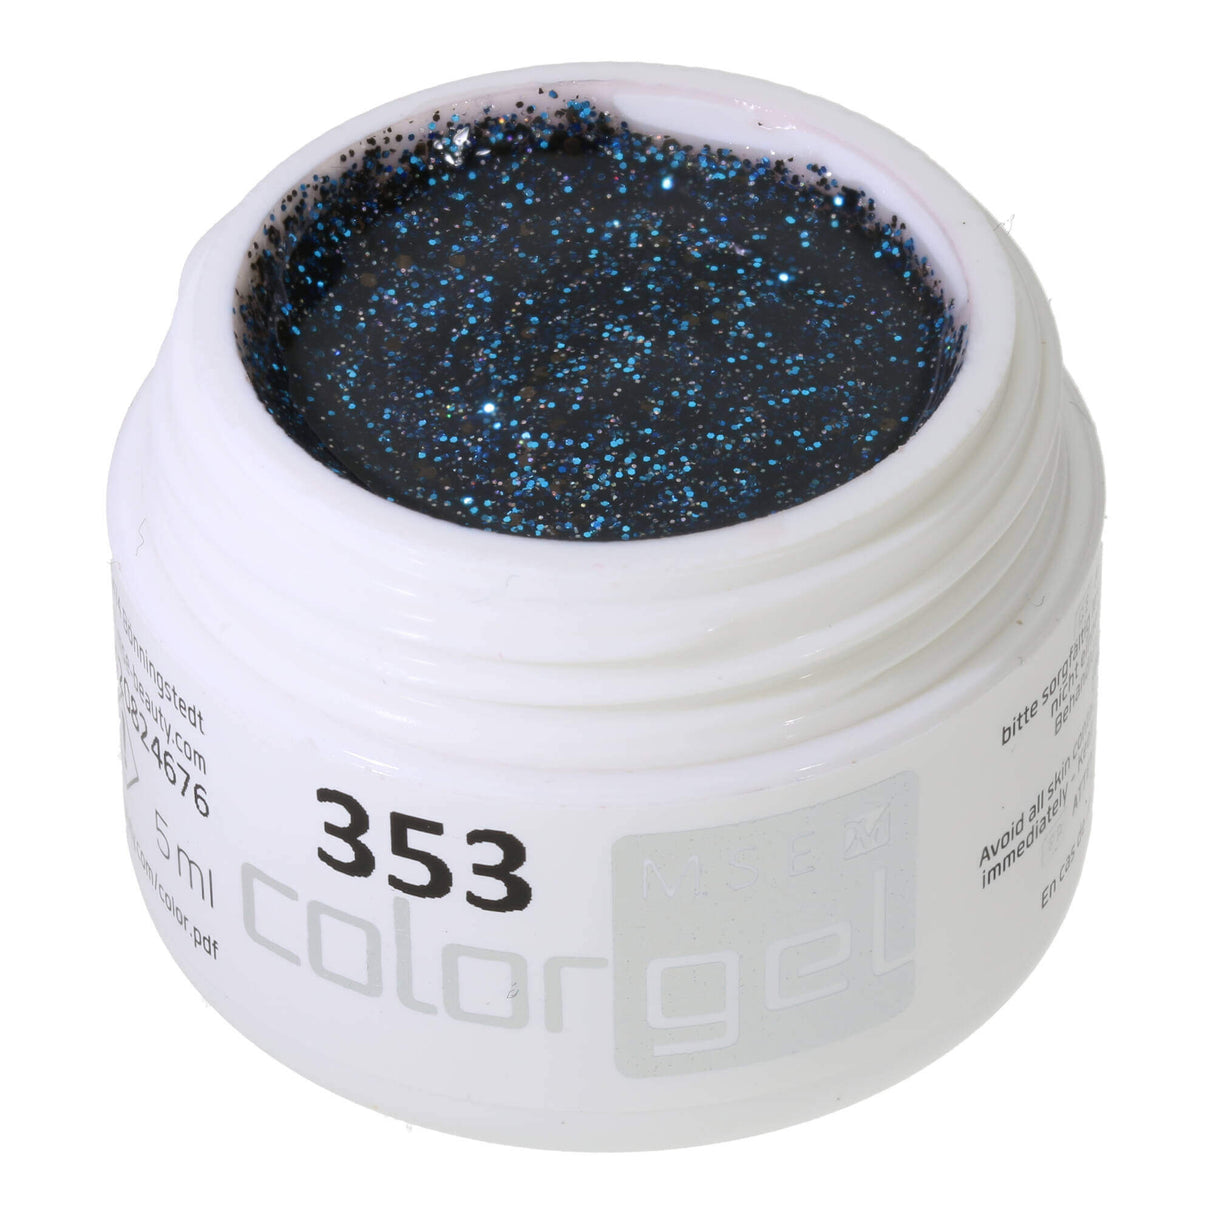 # 353 Premium-GLITTER Gel màu 5ml Hỗn hợp màu đen và xanh lam hoàng gia lấp lánh với các điểm nhấn màu bạc